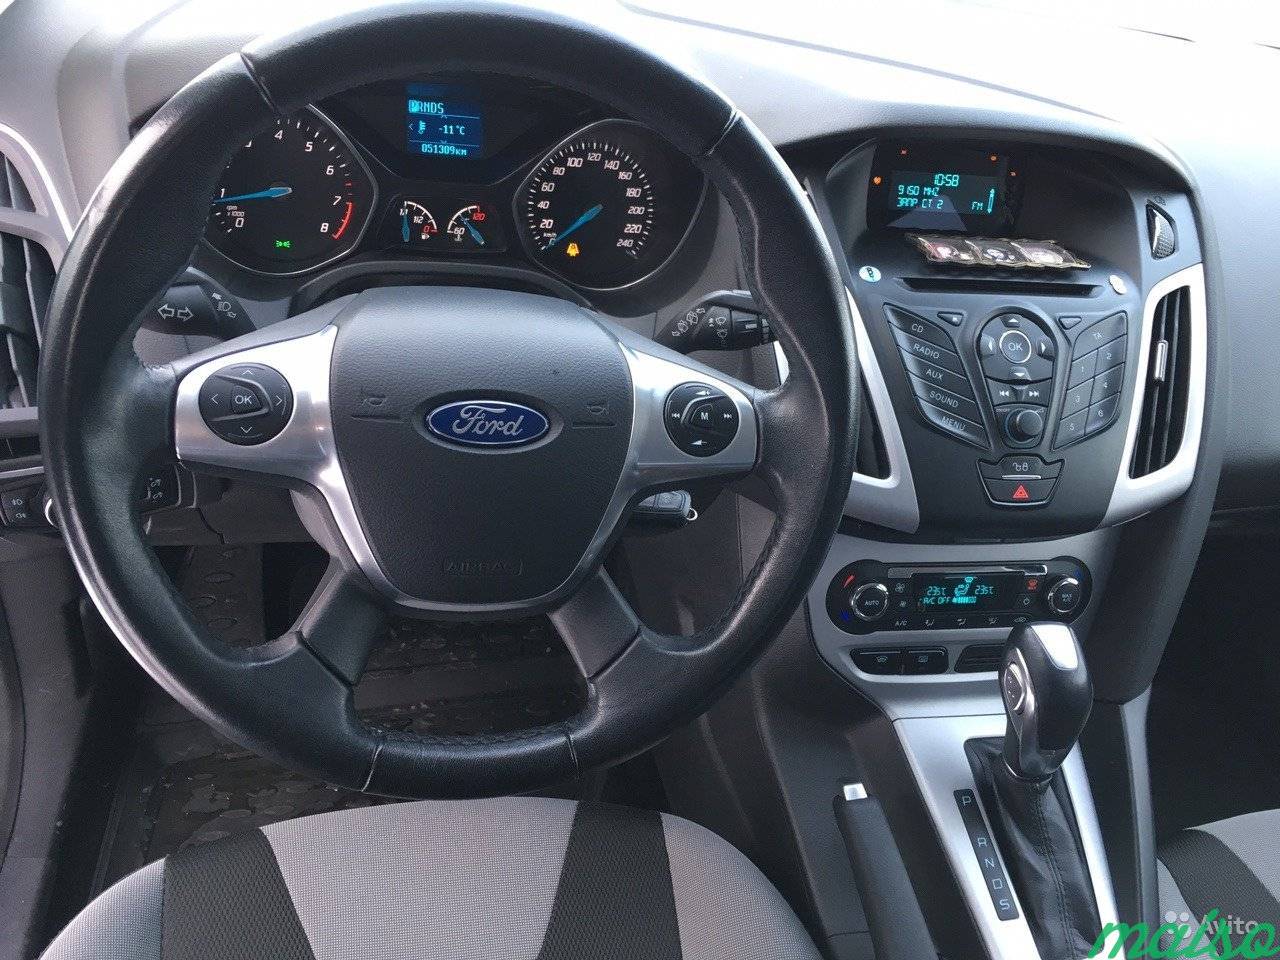 Ford Focus 1.6 AT, 2014, хетчбэк в Санкт-Петербурге. Фото 7